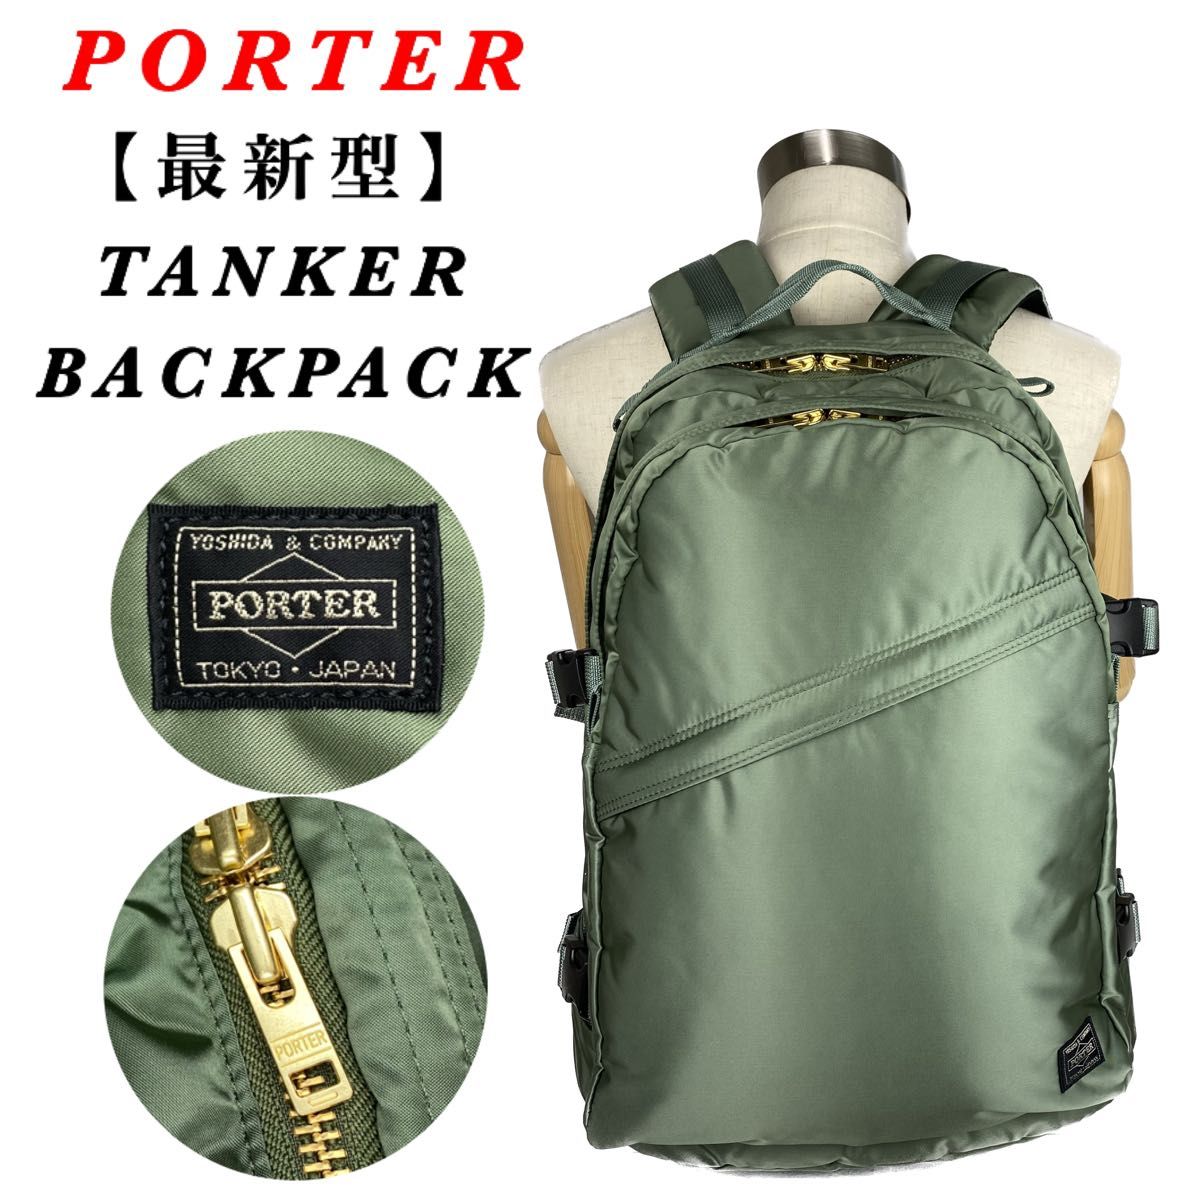 【最新型】PORTER / TANKER BACKPACK / セージグリーン ポーター タンカー バックパック 現行 完売品